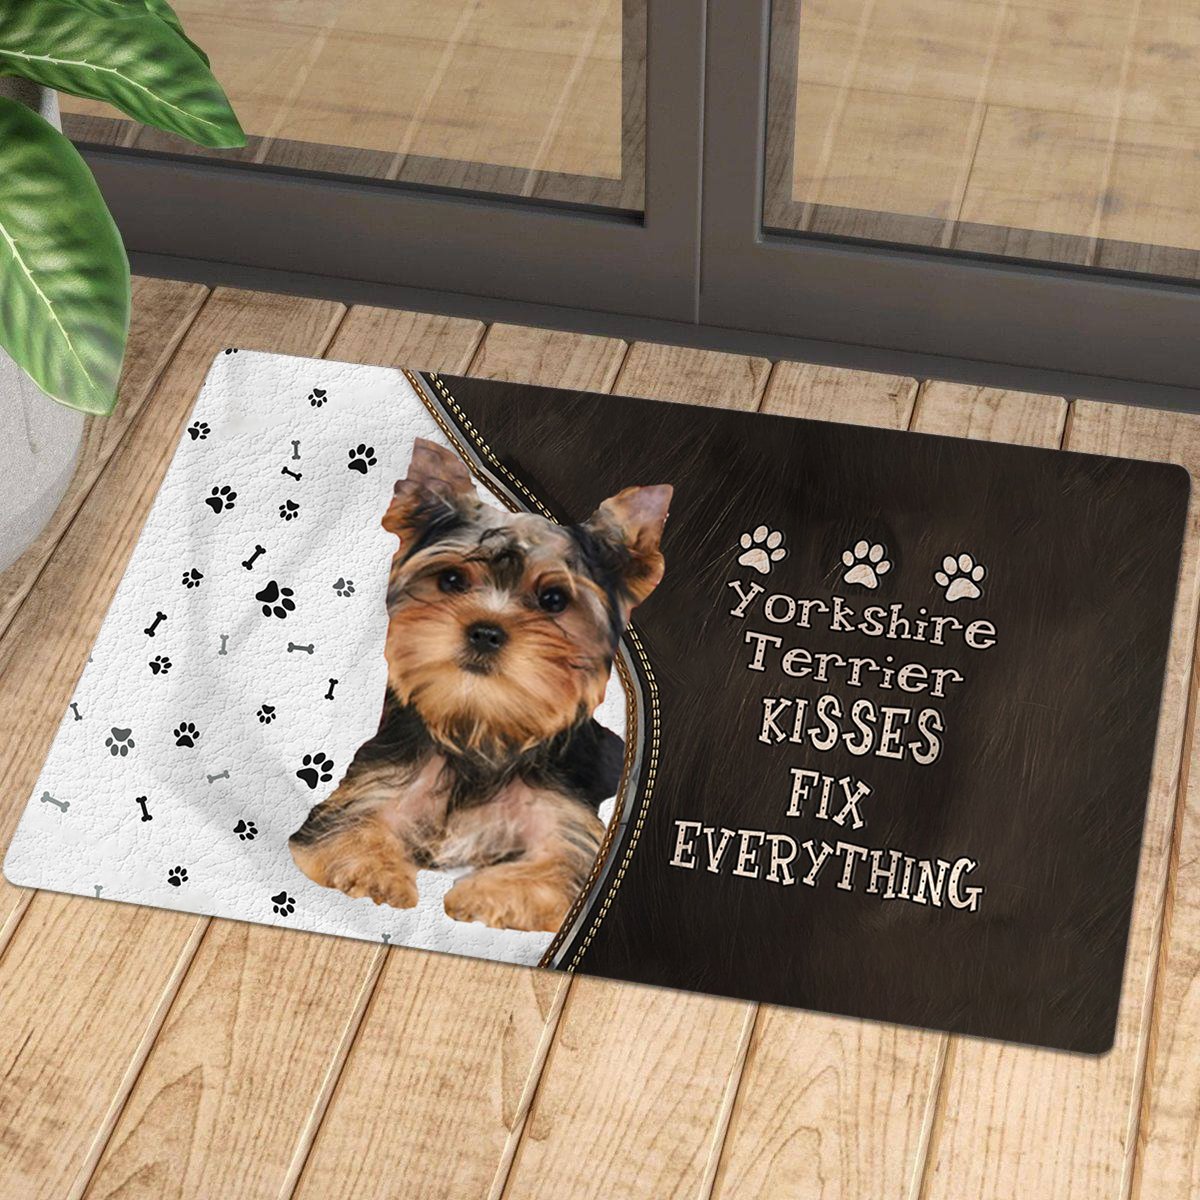 Yorkshire Terrier Kisses Fix Everything Doormat